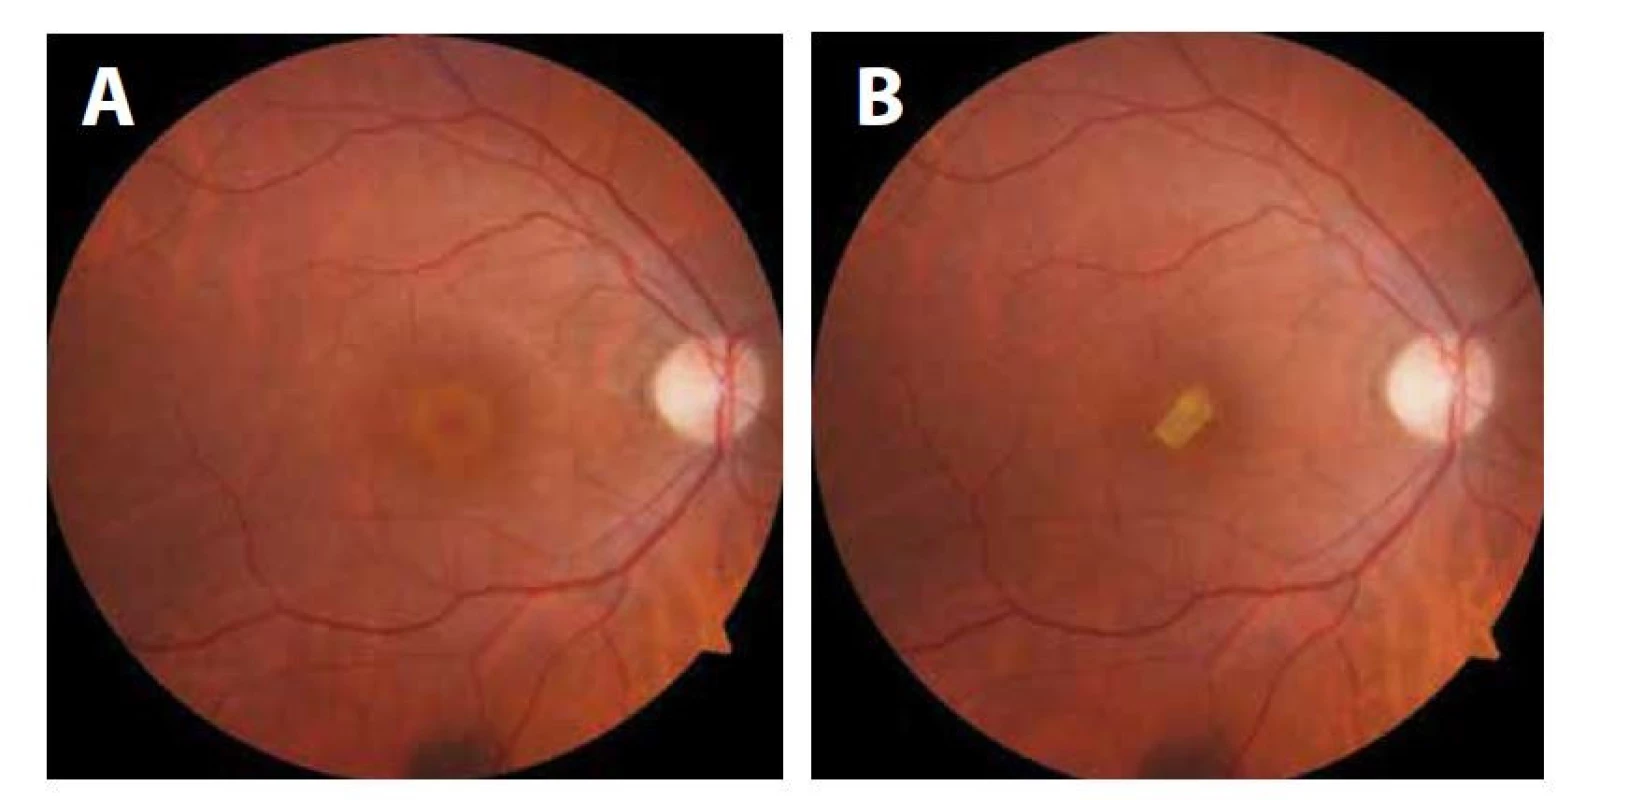 (A) predoperačný nález. (B) pooperačný nález pacientky č. 1, terč zrakového nervu je bledý,
atrofický, pooperačne pretrváva subretinálne zátka z amniovej membrány.